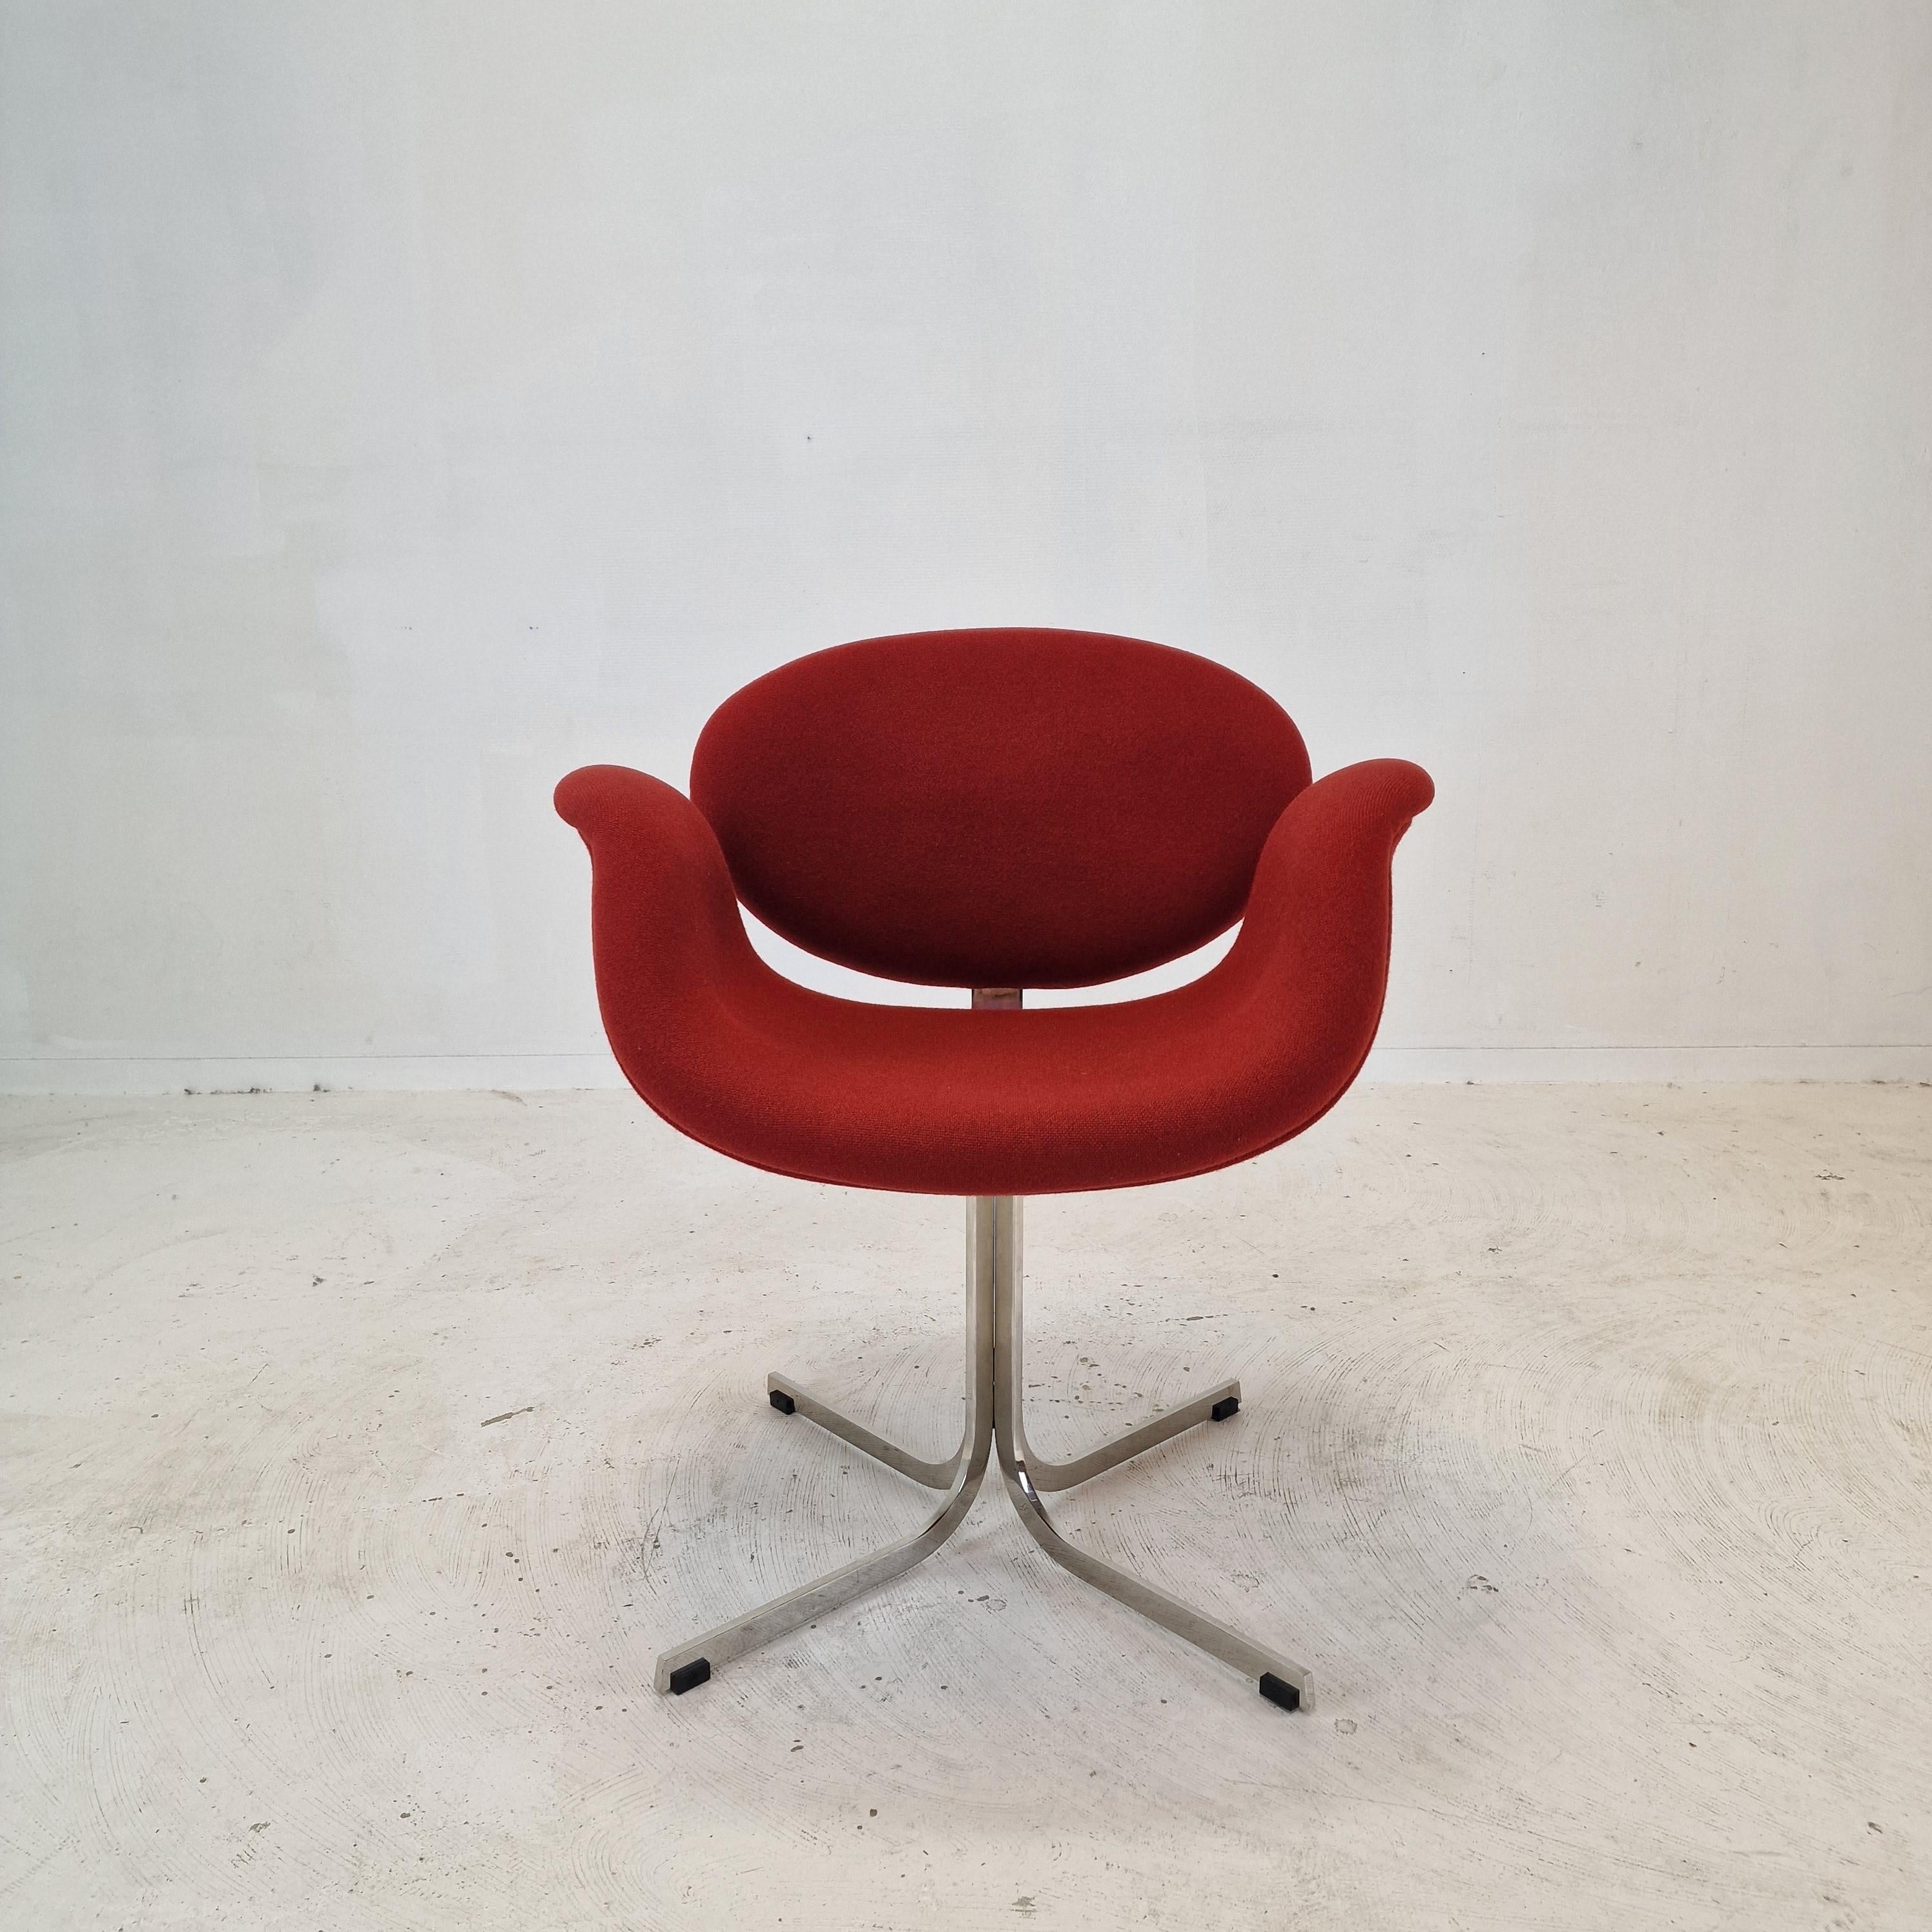 Hübscher und sehr bequemer Sessel, entworfen von dem berühmten französischen Designer Pierre Paulin in den 60er Jahren. 
Hergestellt von Artifort in den 80er Jahren. 

Kreuzfuß aus Metall mit Holzrahmen, bezogen mit dem hochwertigen